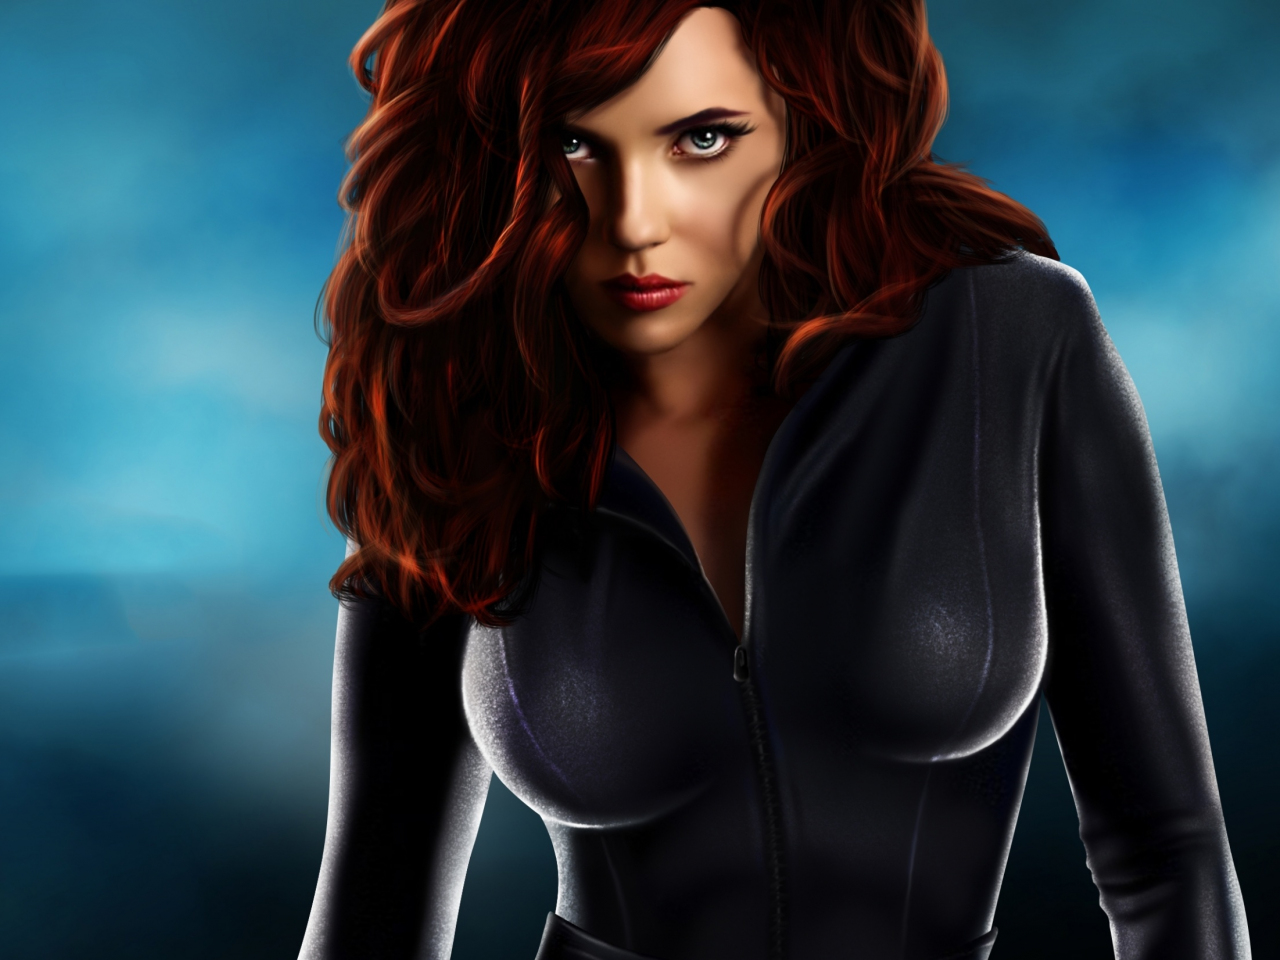 Black Widow, hot avenger, art, 1280x960 wallpaper.